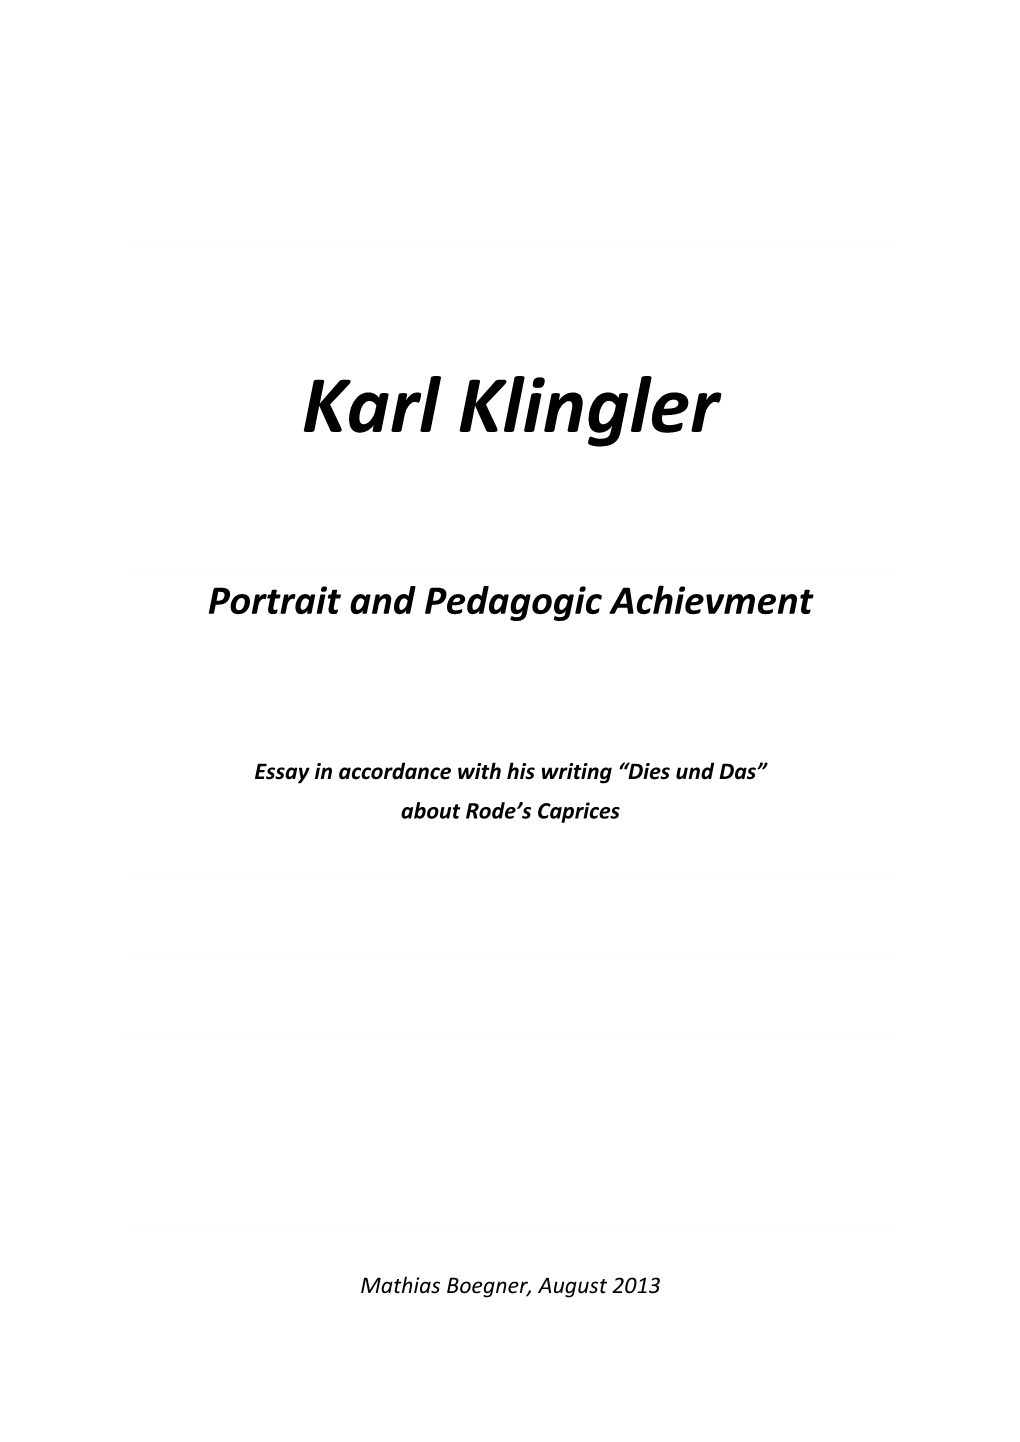 Karl Klingler